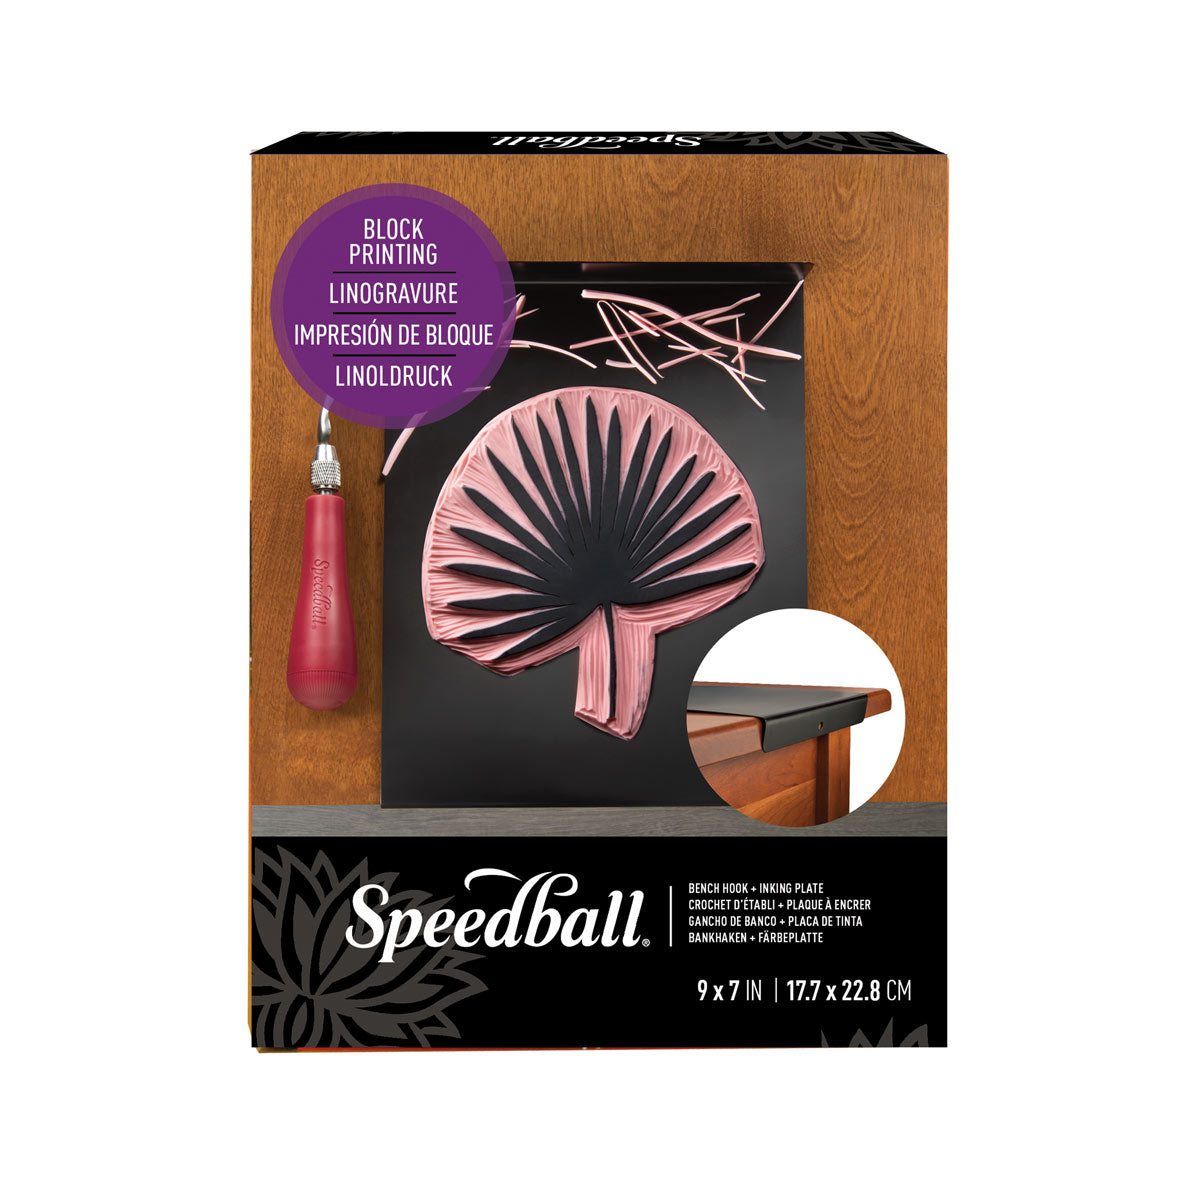 Speedball-Crochet d'Encres pour Plaque d'Impression de Blocs-23x18cm